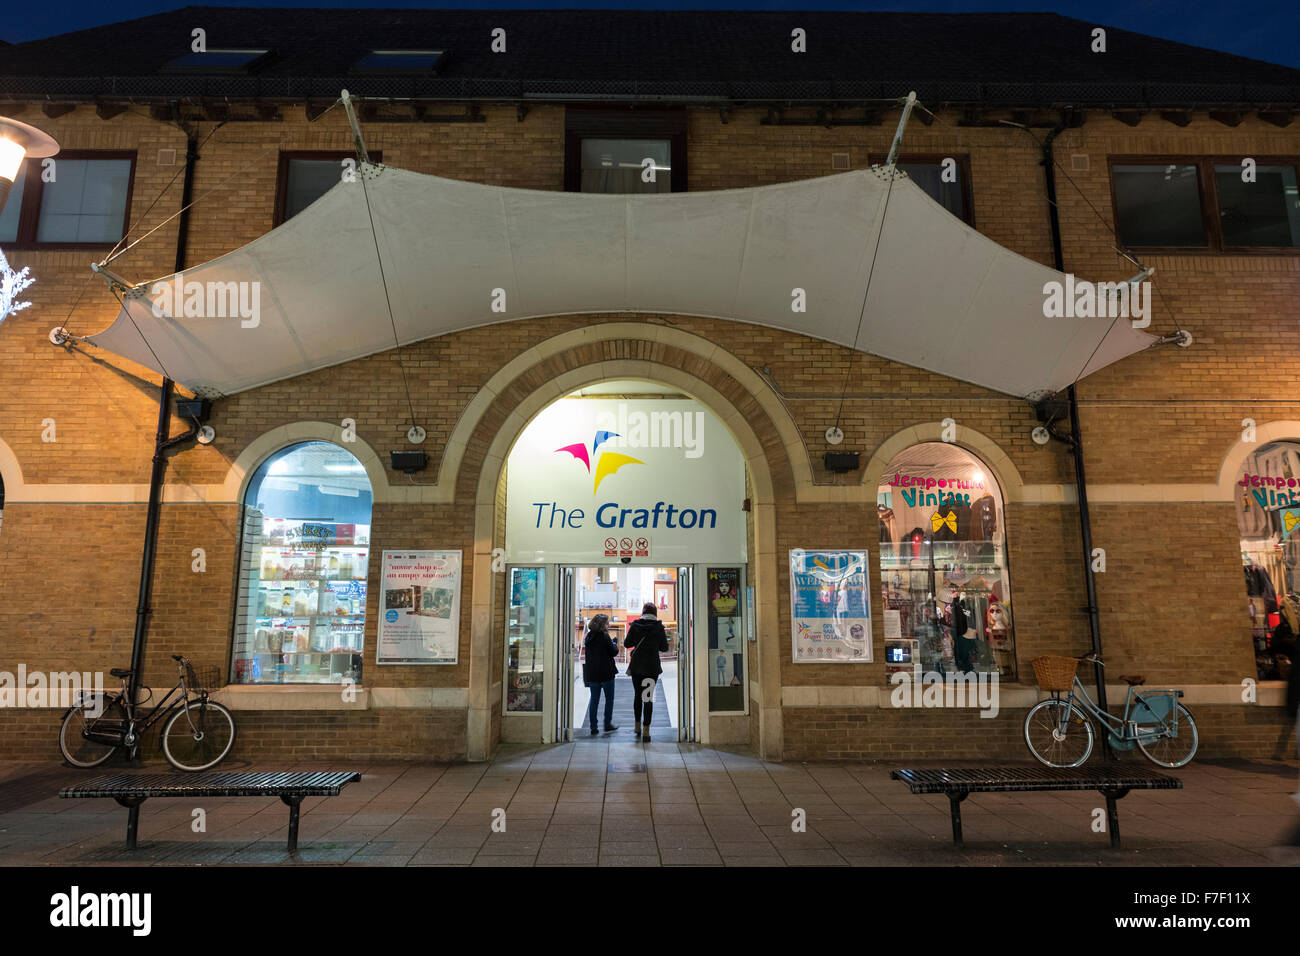 The Grafton shopping arcade entrance Burleigh Street Cambridge Cambridgeshire England Stock Photo